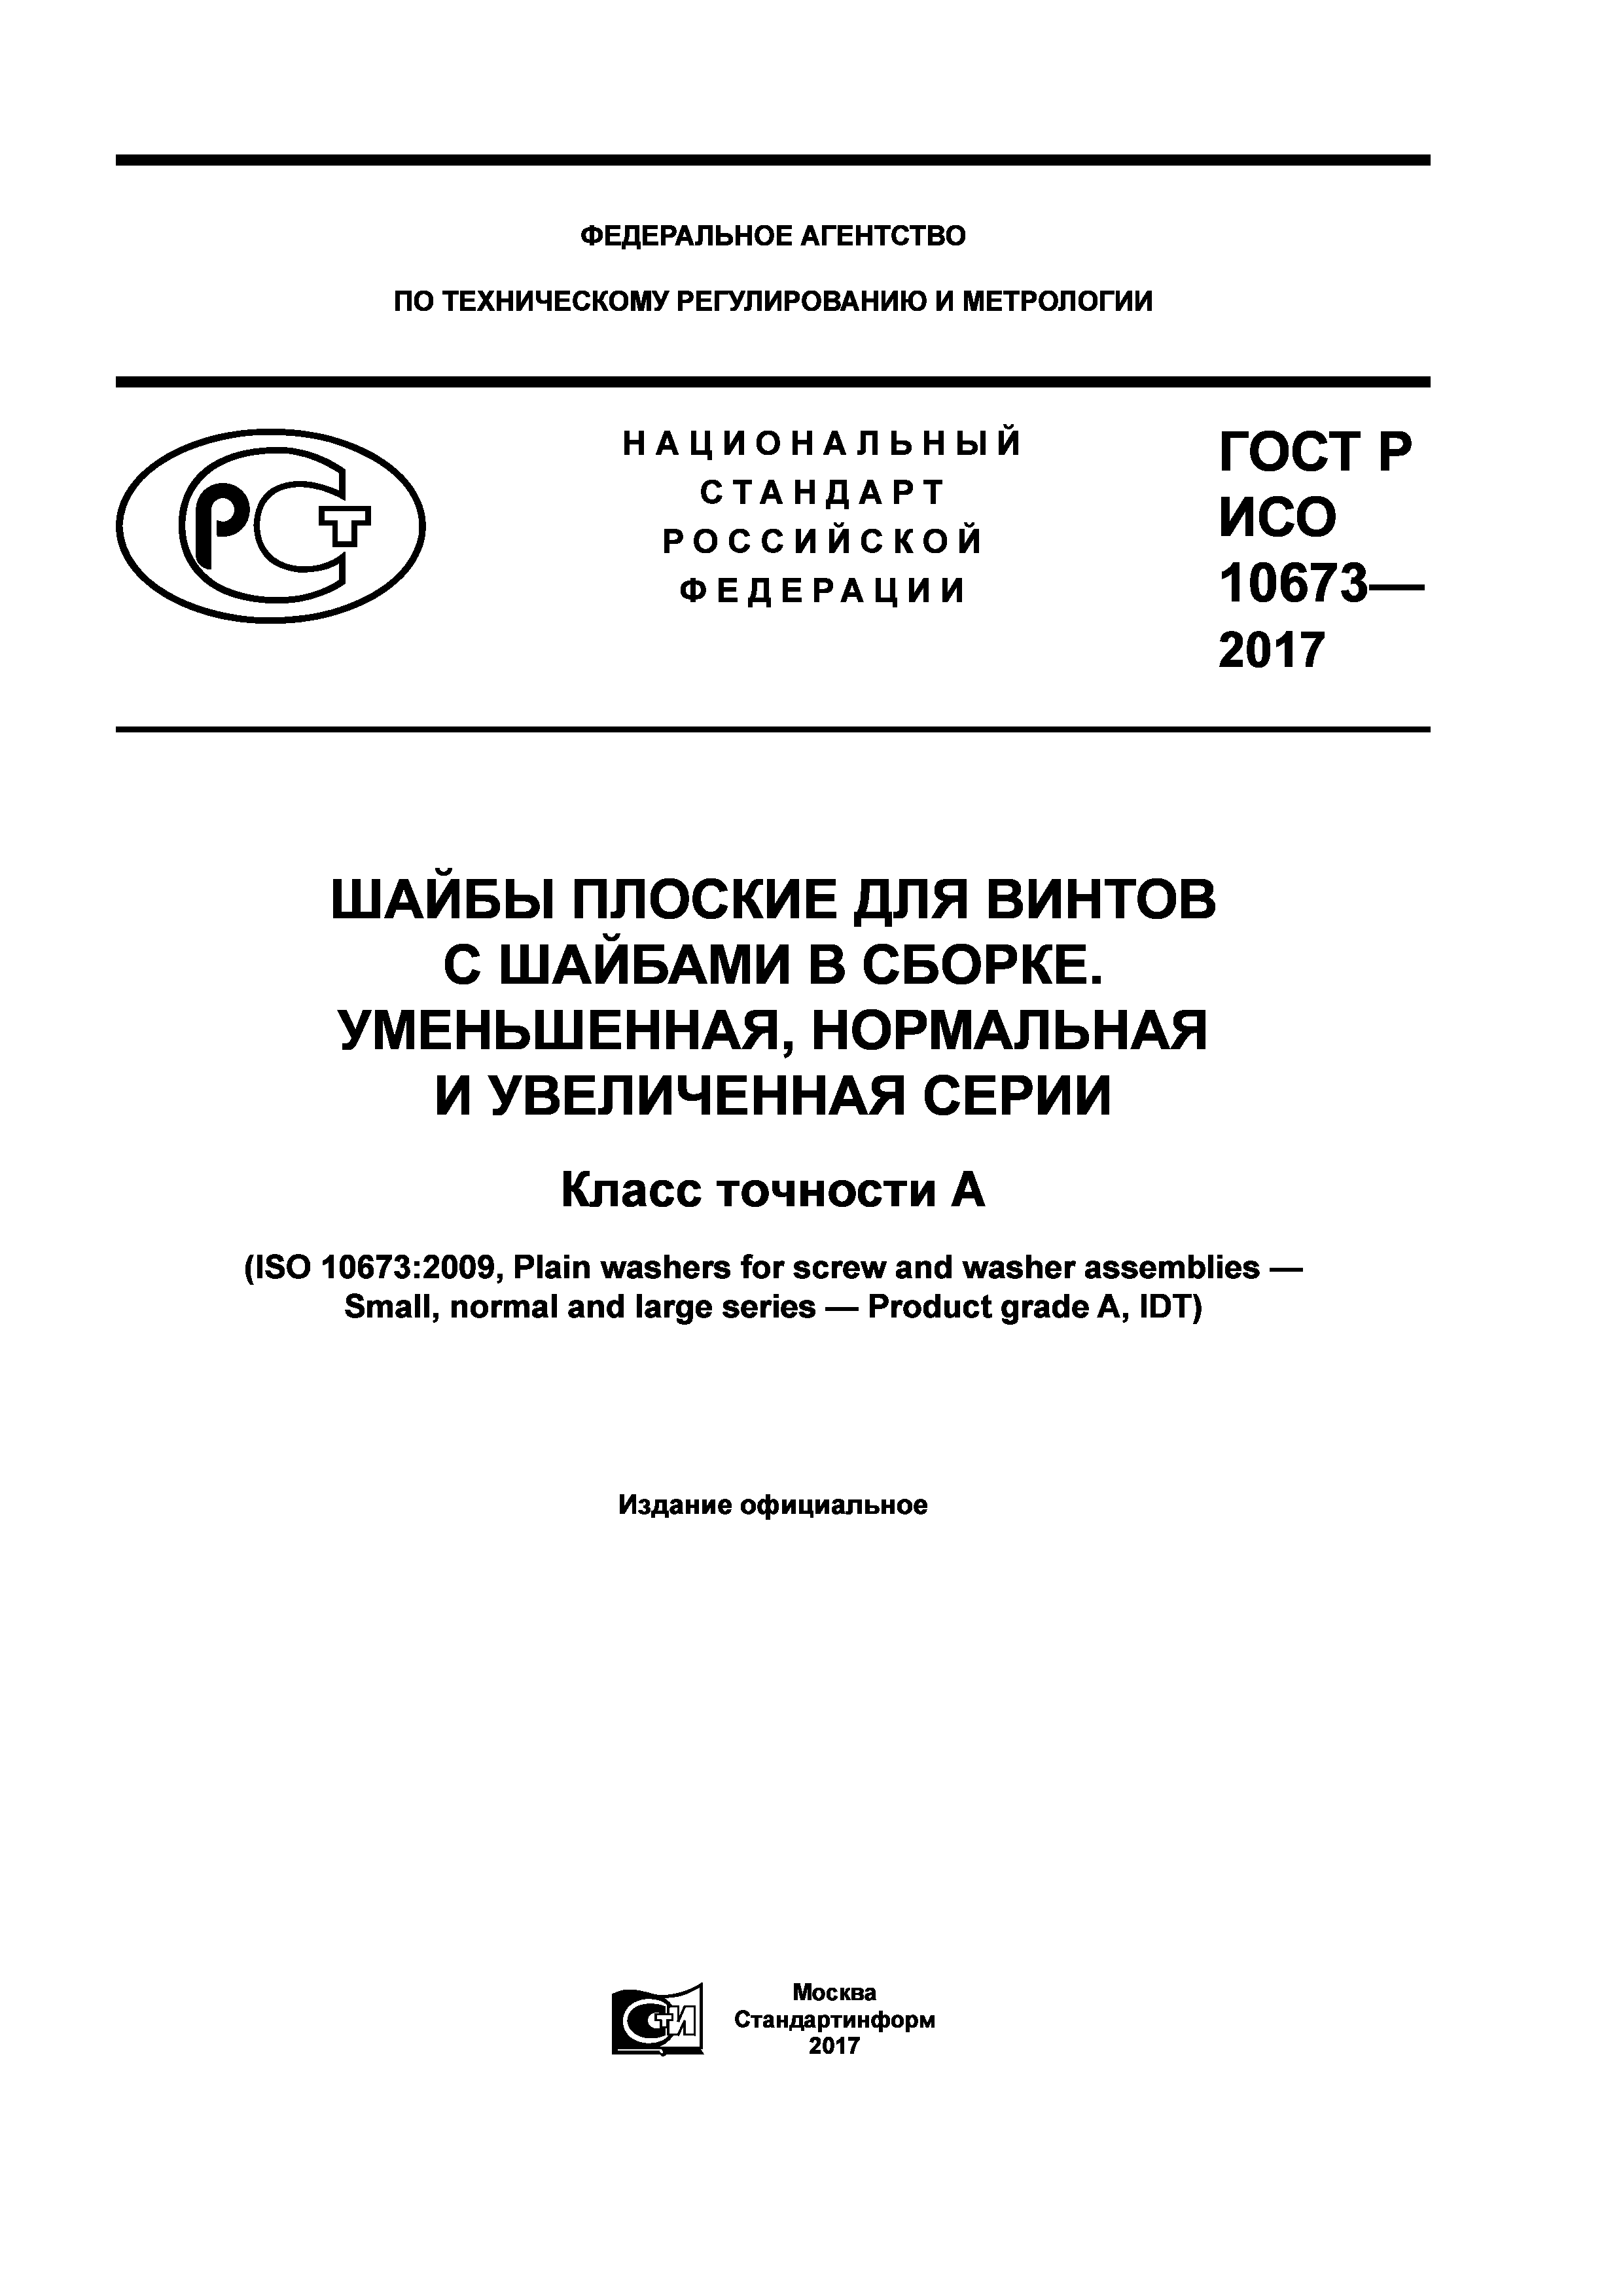 ГОСТ Р ИСО 10673-2017